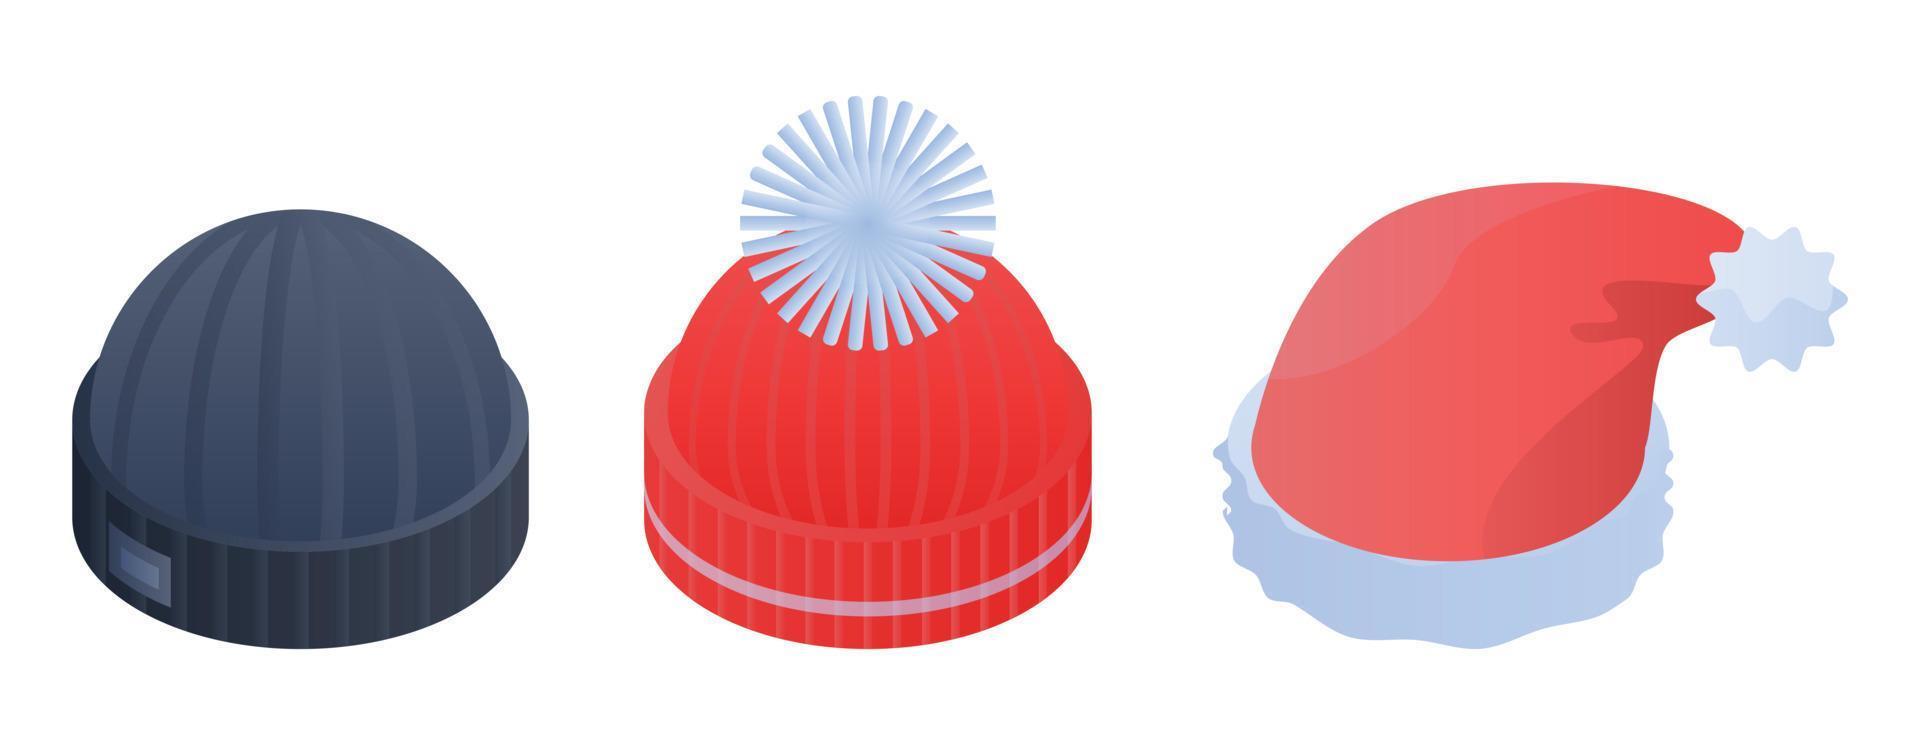 conjunto de iconos de sombreros de invierno, estilo isométrico vector